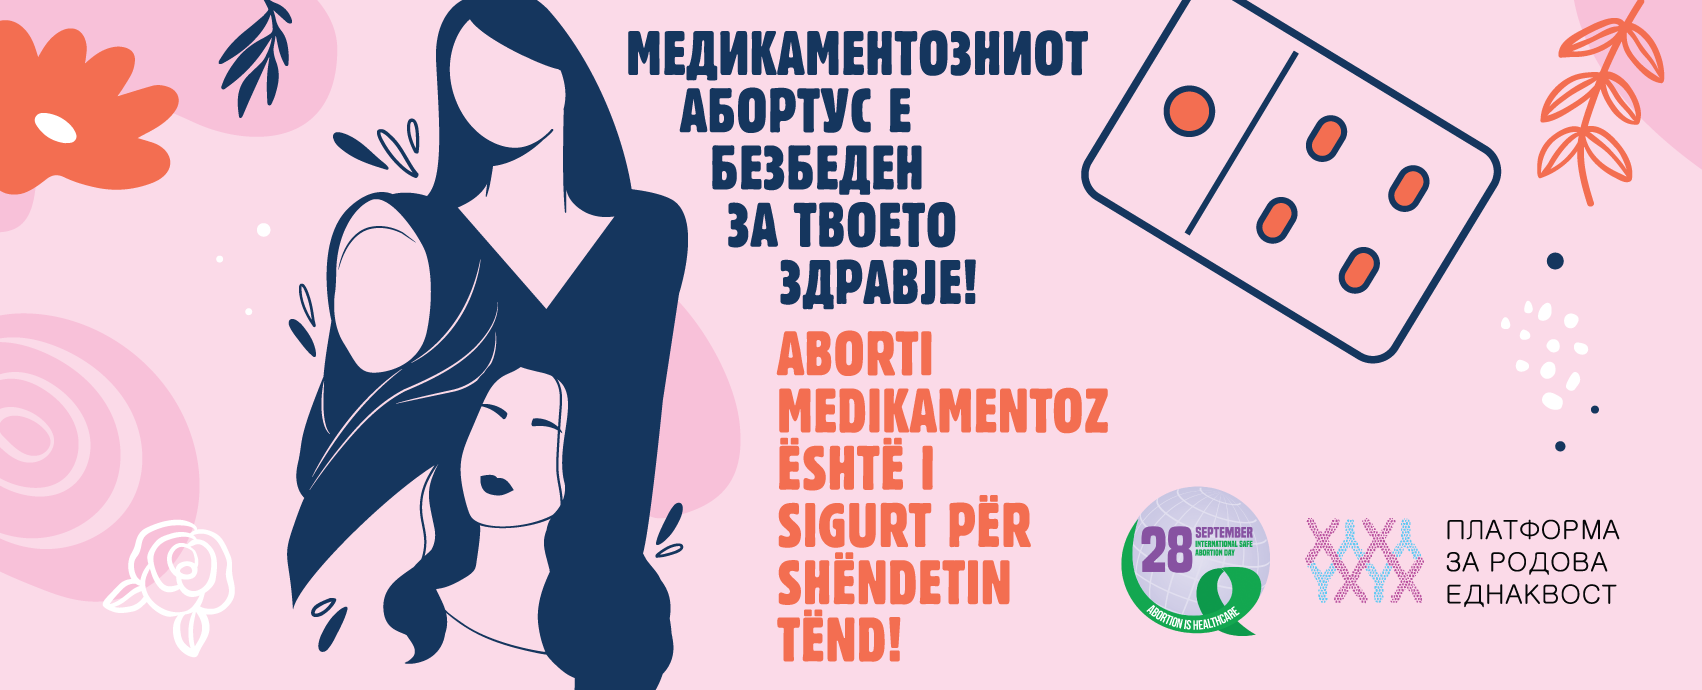 Платформа за родова еднаквост: Безбедниот абортус е основна здравствена заштита – и точка!